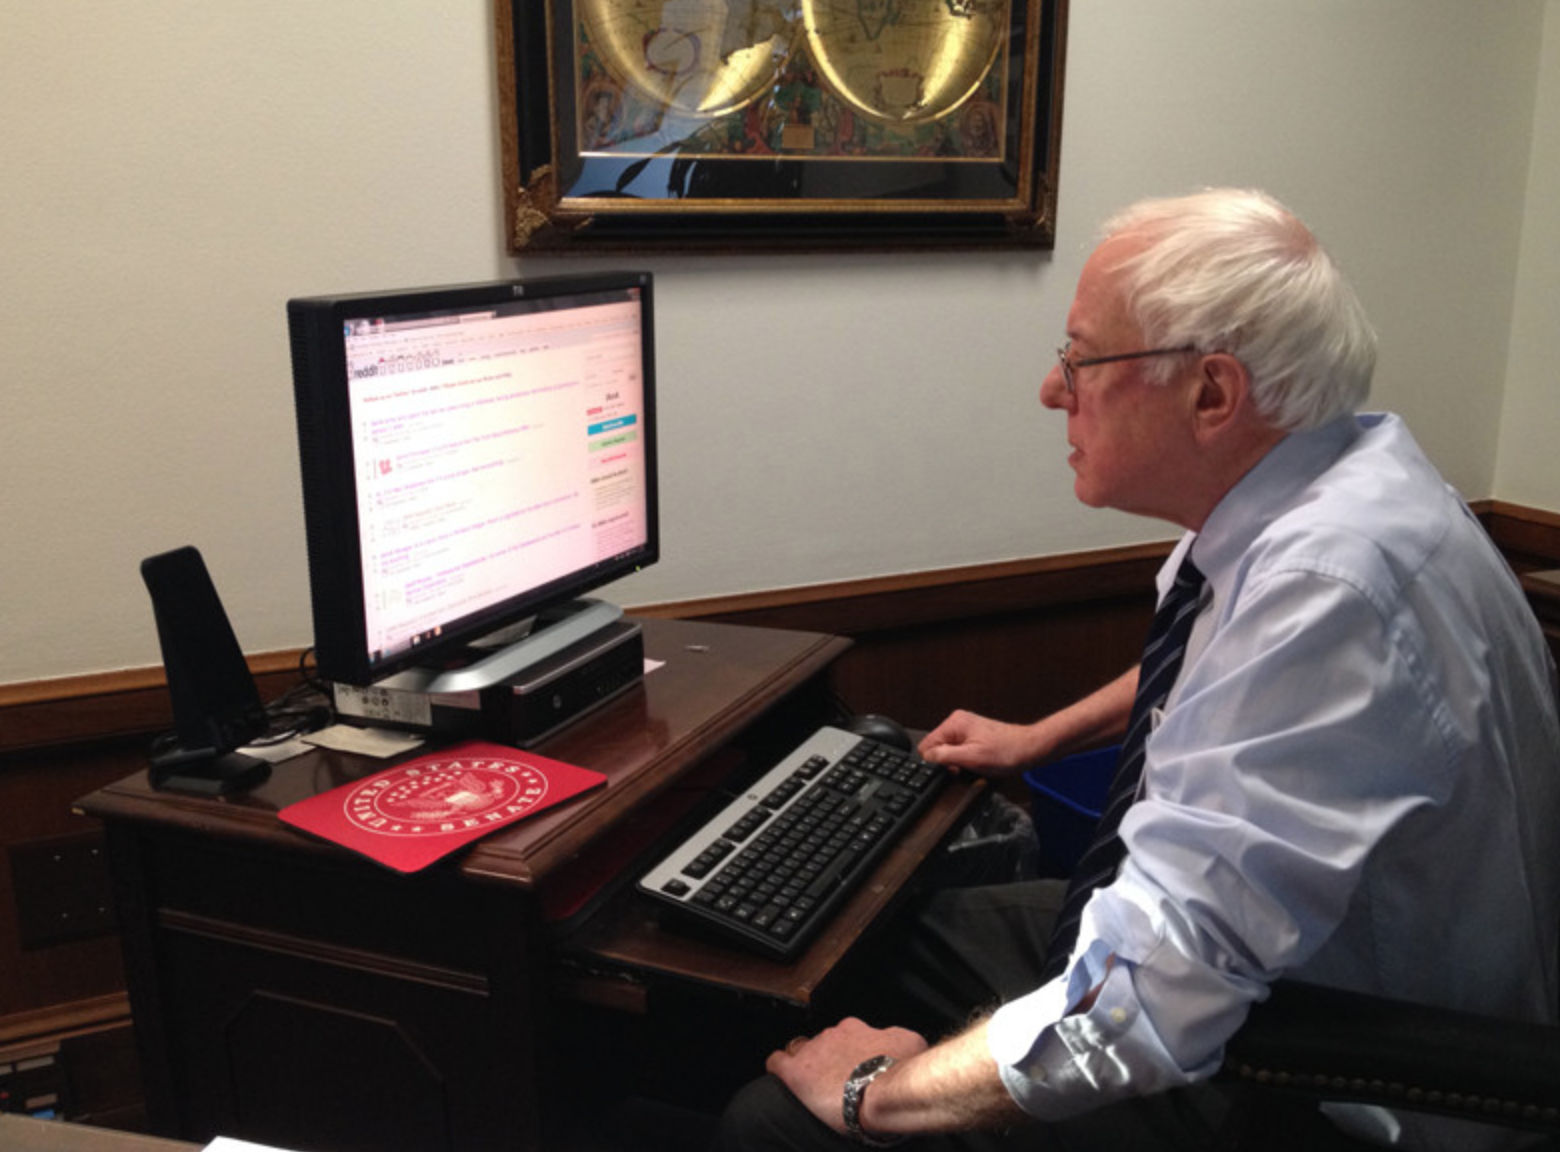 Bernie Sanders during a Reddit AMA in 2013